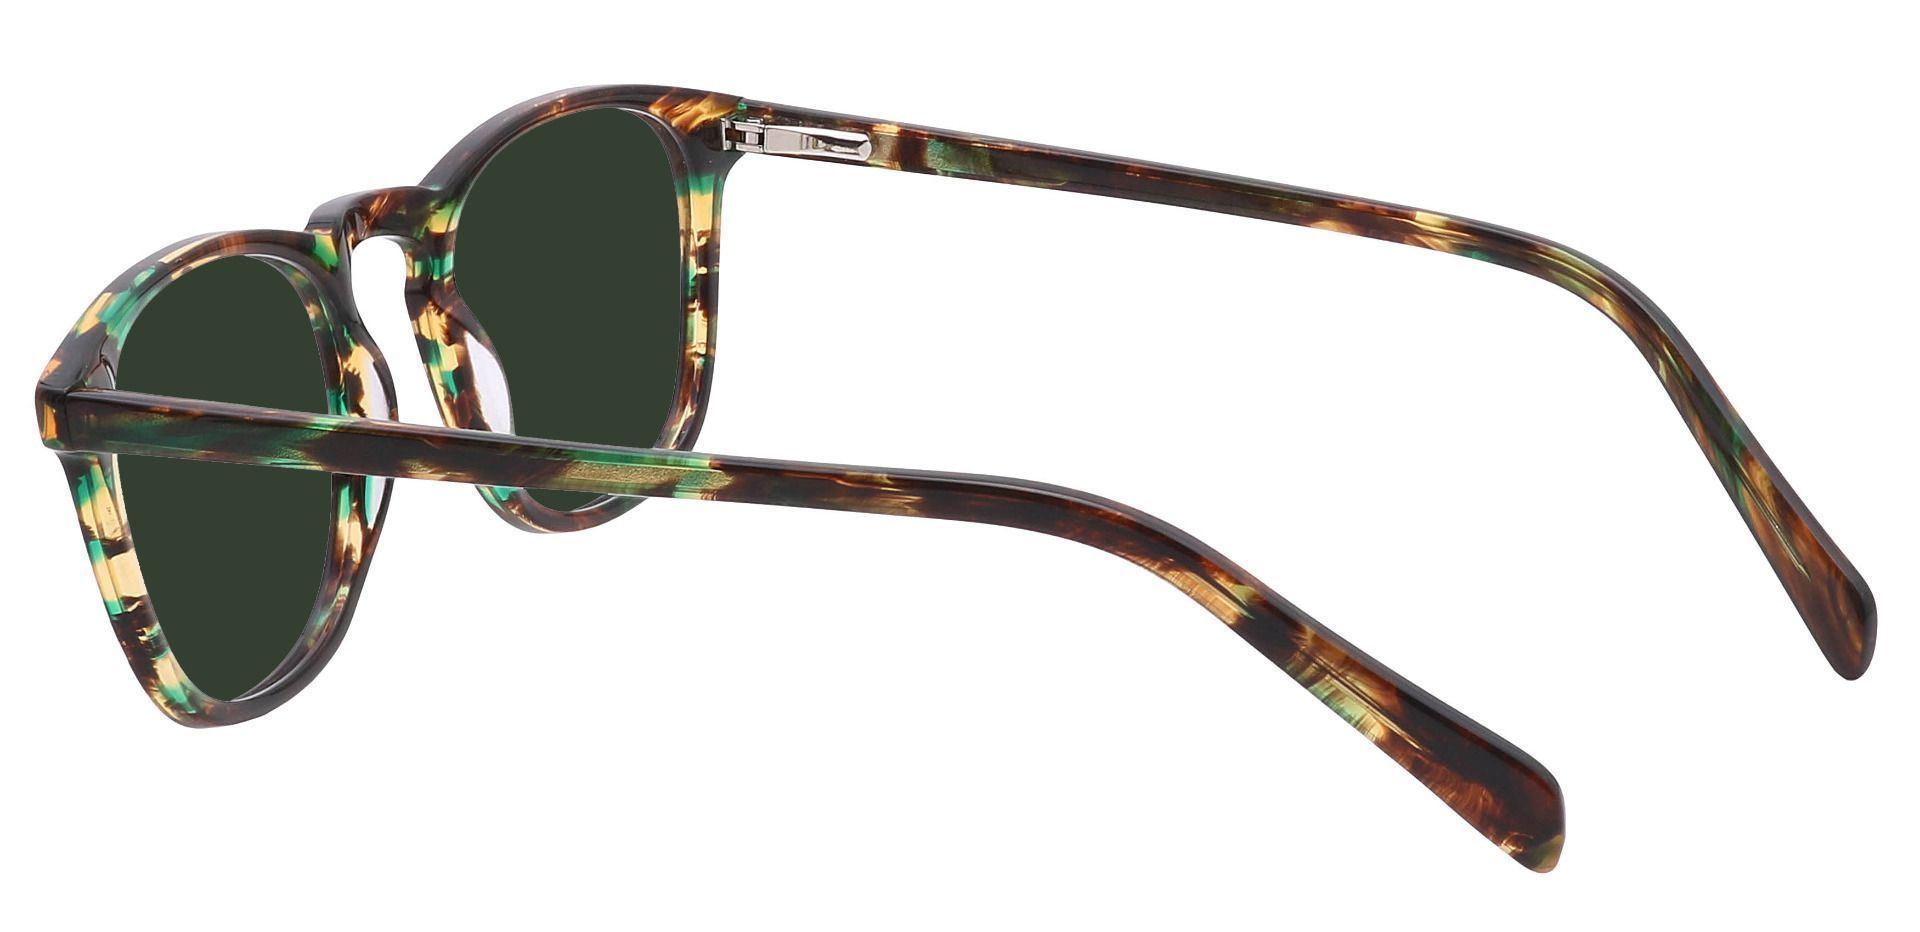 Venti Square Prescription Sunglasses - Green Frame With Green Lenses